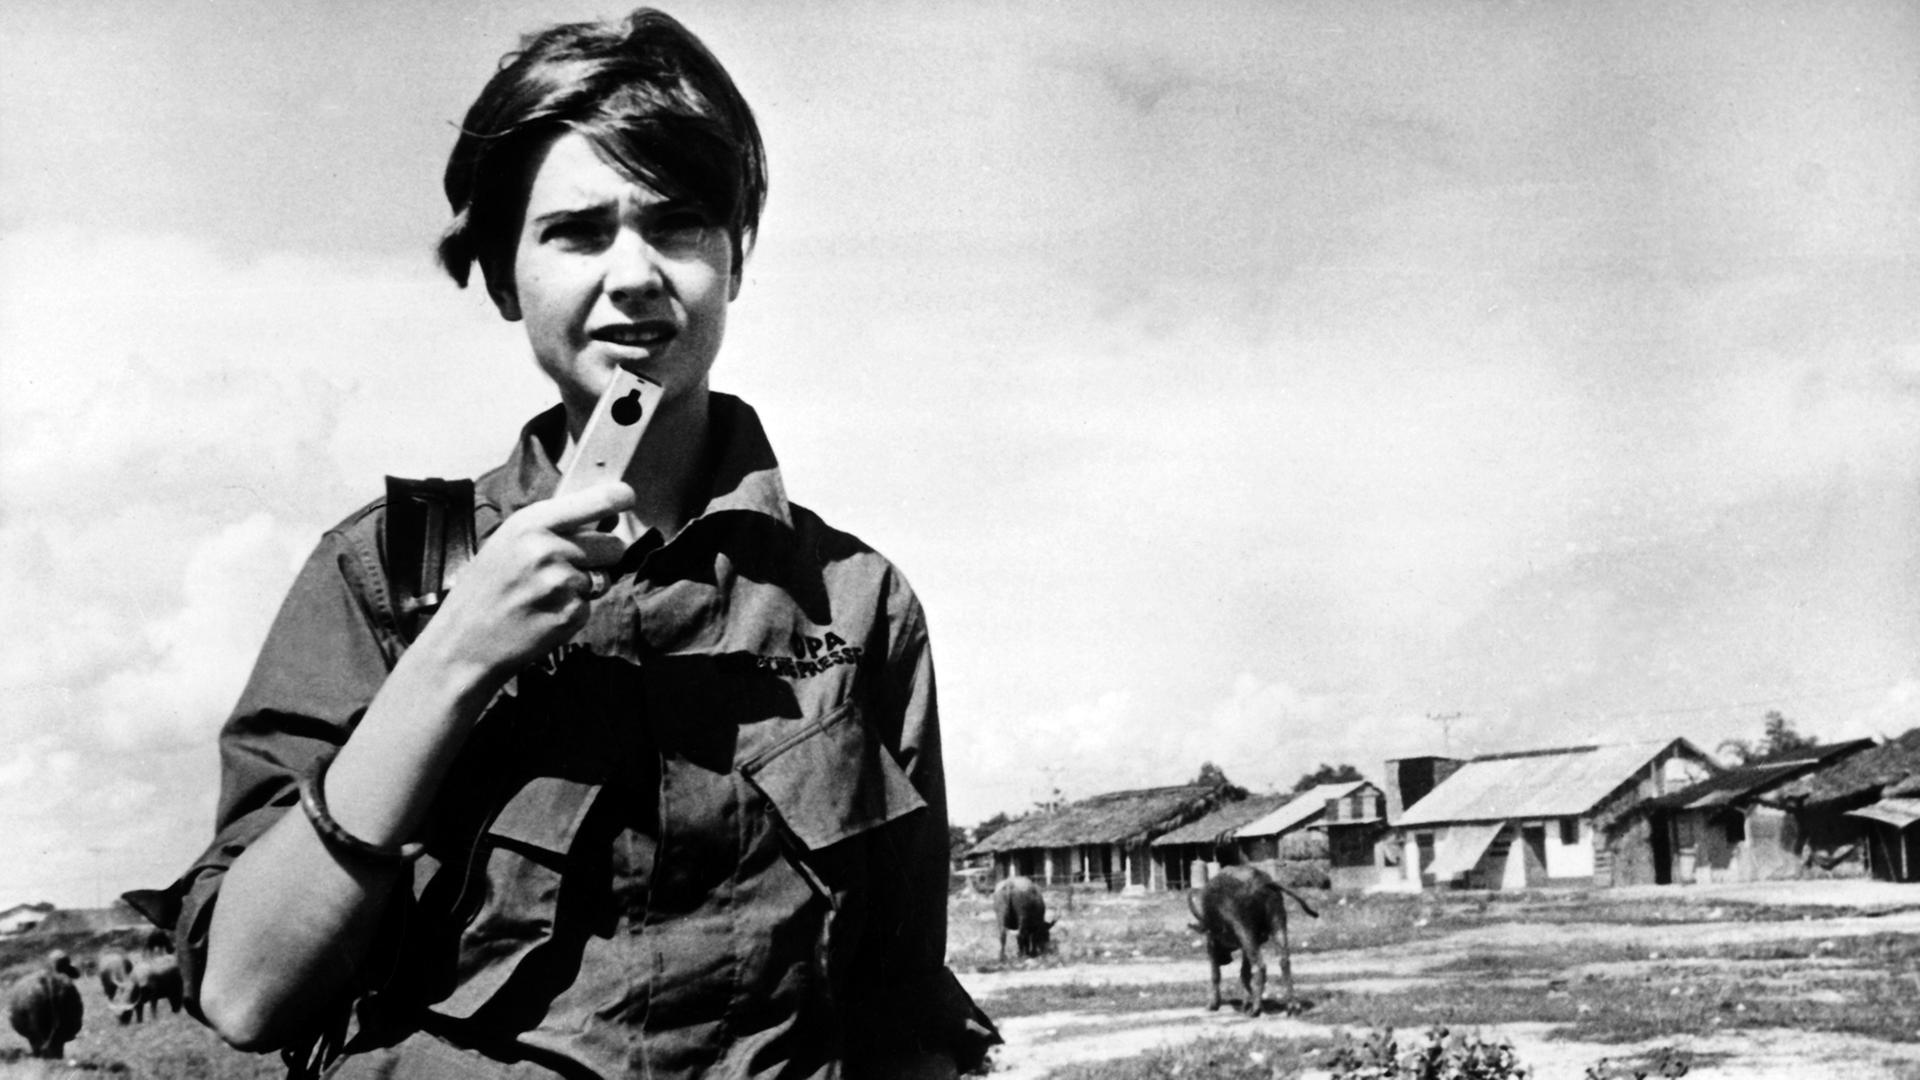 Die deutsche Journalistin Thea Rosenbaum berichtete für die Deutsche Presseagentur vom Kriegsschauplatz Vietnam. Das Bild zeigt sie, wie sie am 20.2.1968 einen Bericht in ihr Mikrofon spricht.